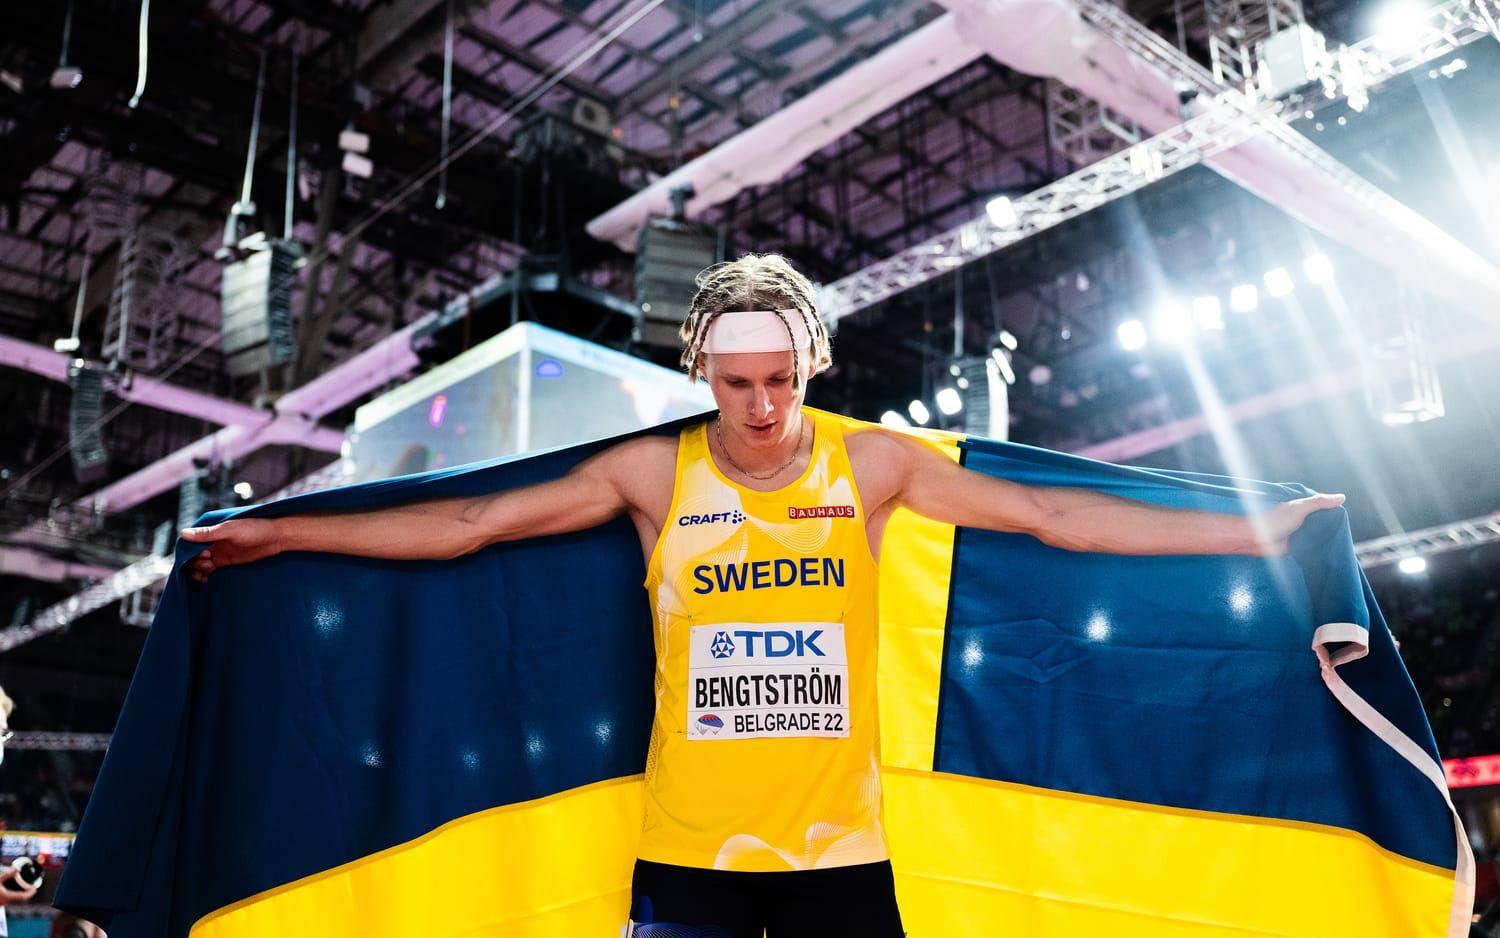 Ifjol tog han ett sensationellt inomhus-VM-brons 400 meter och slog ett över 20 år gammalt svenskt rekord med tiden 45,33-